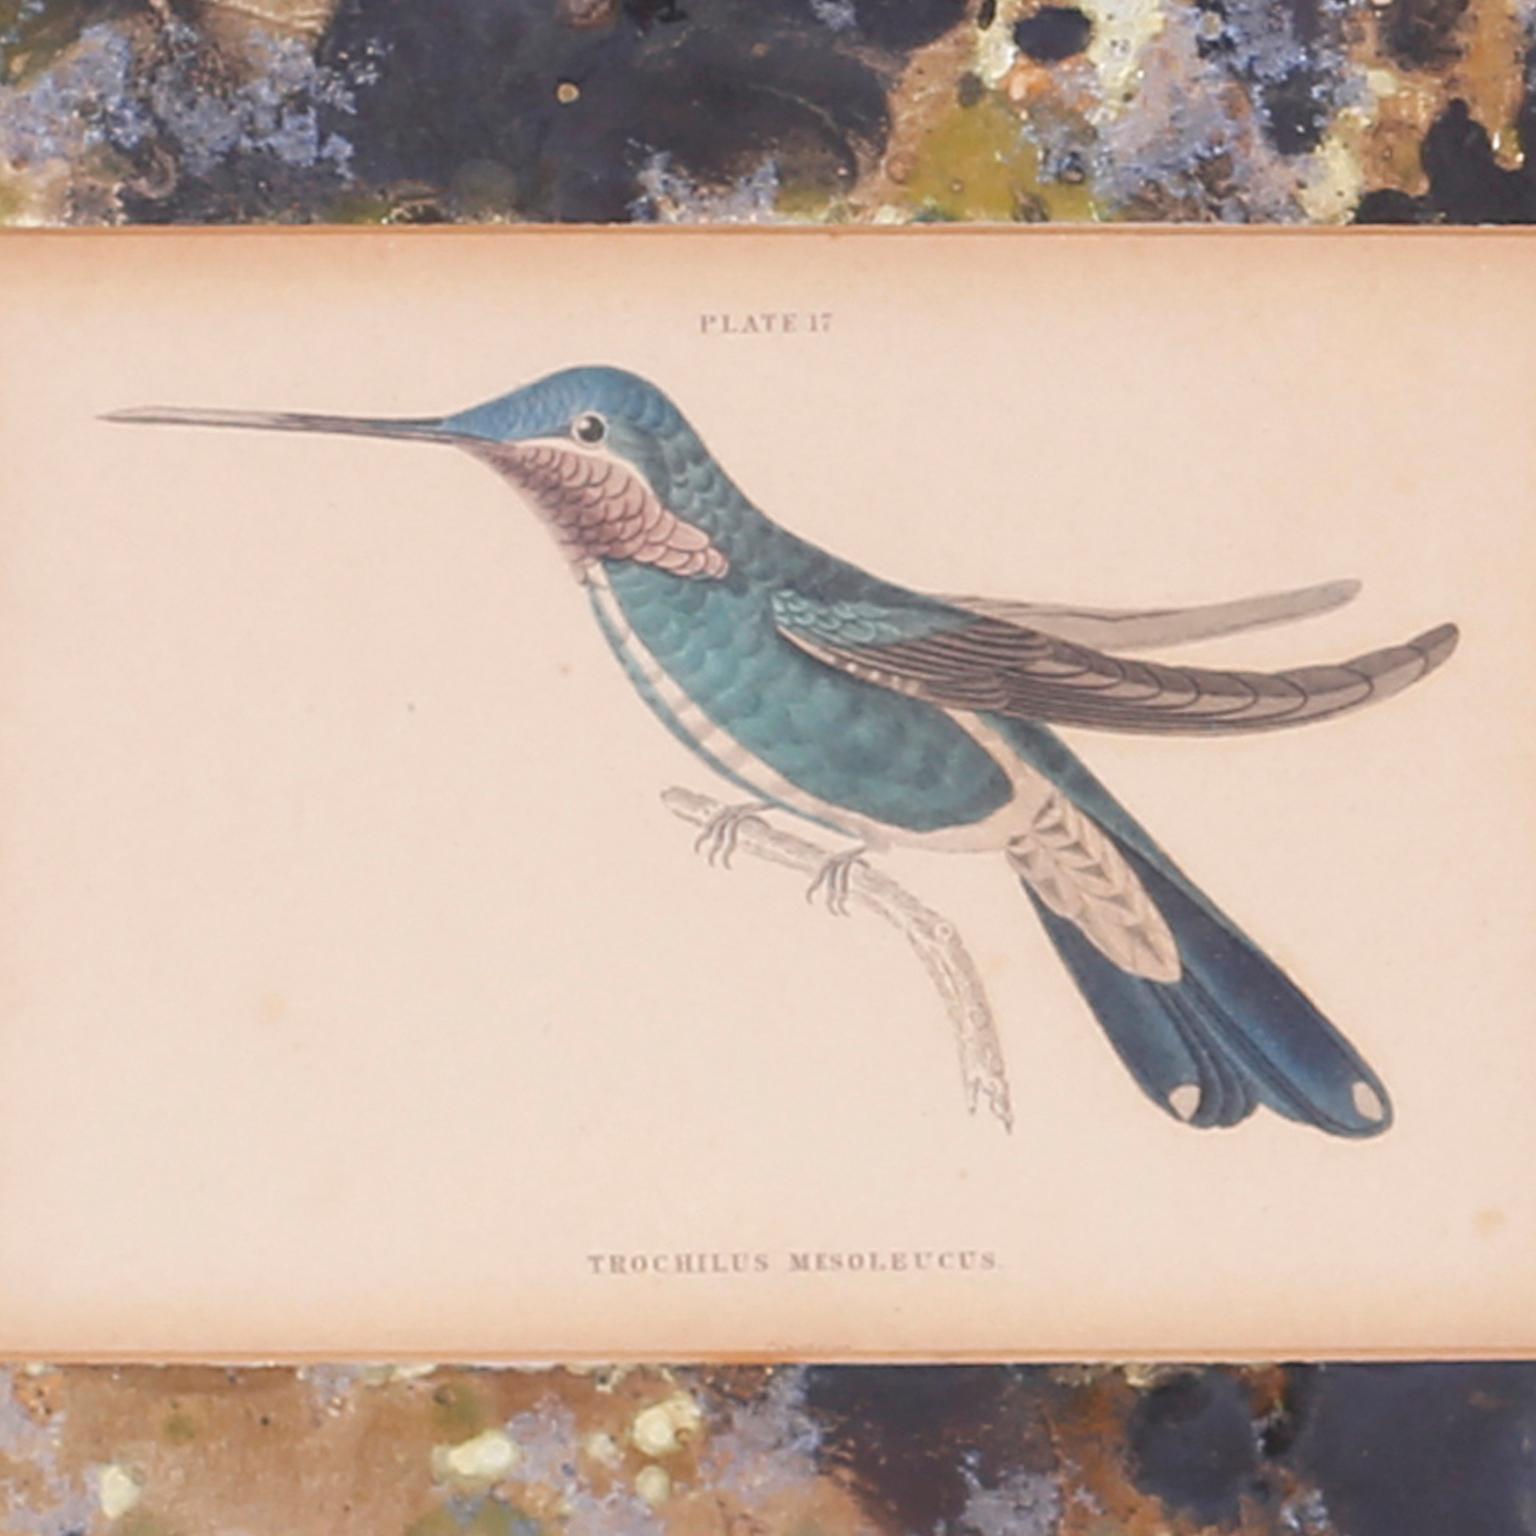 Voici quatre encadrements d'espèces de colibris colorés à la main, publiés au début du 20e siècle, représentant le travail original du 19e siècle du naturaliste écossais, Sir William Jardine. Présenté sous verre avec des marbrures et les cadres